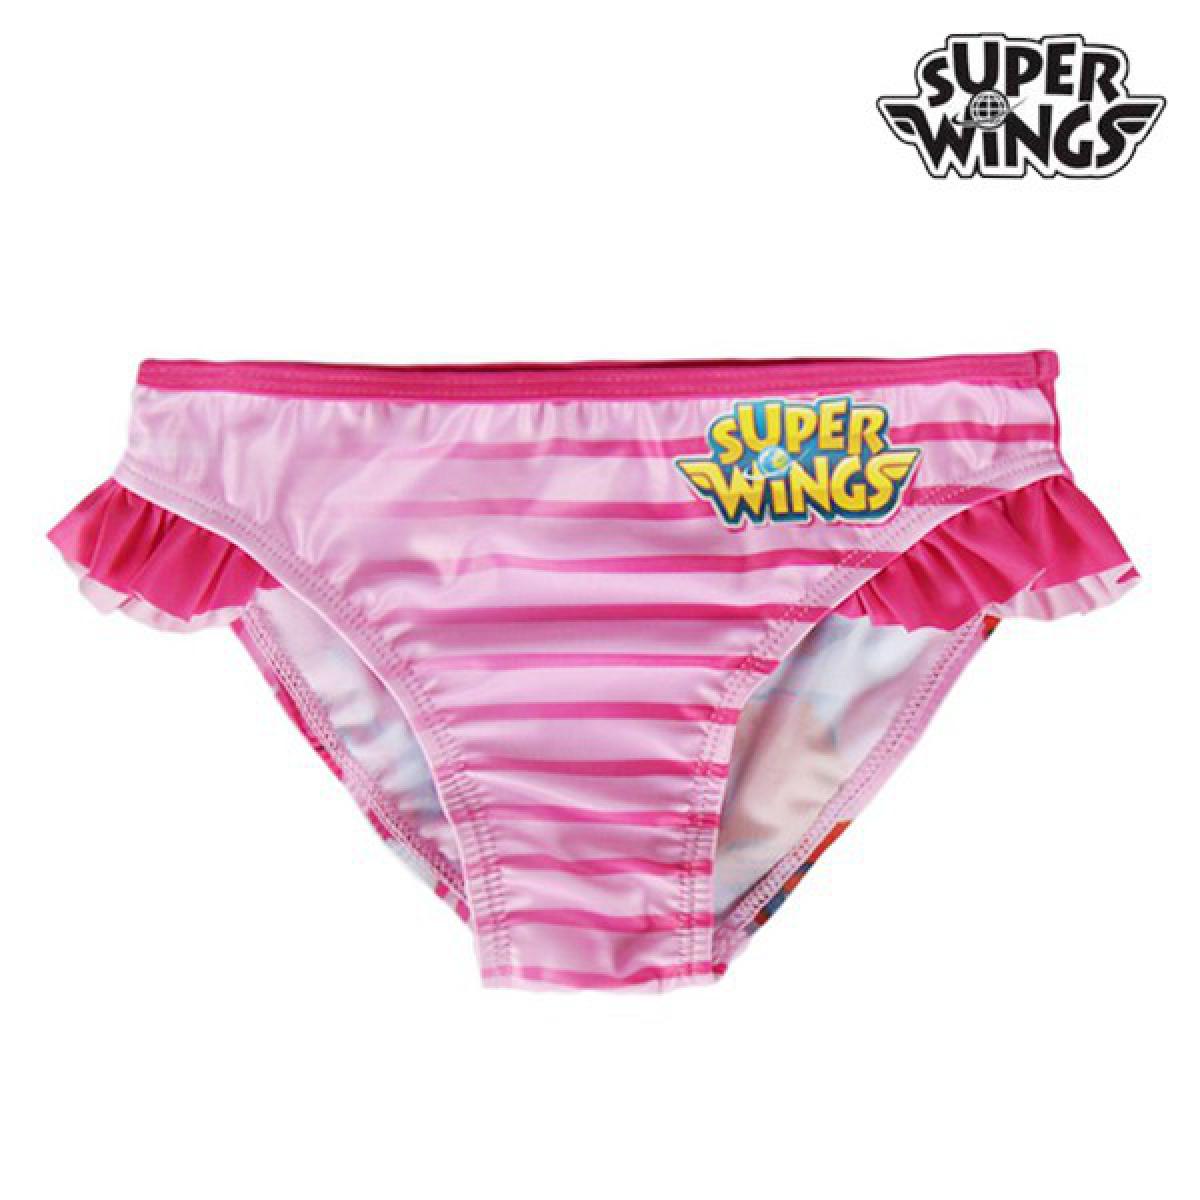 Totalcadeau - Bas de mailliot de bain Super Wings pour filles - Pour mer et piscine Pas cher - Rangements à chaussures